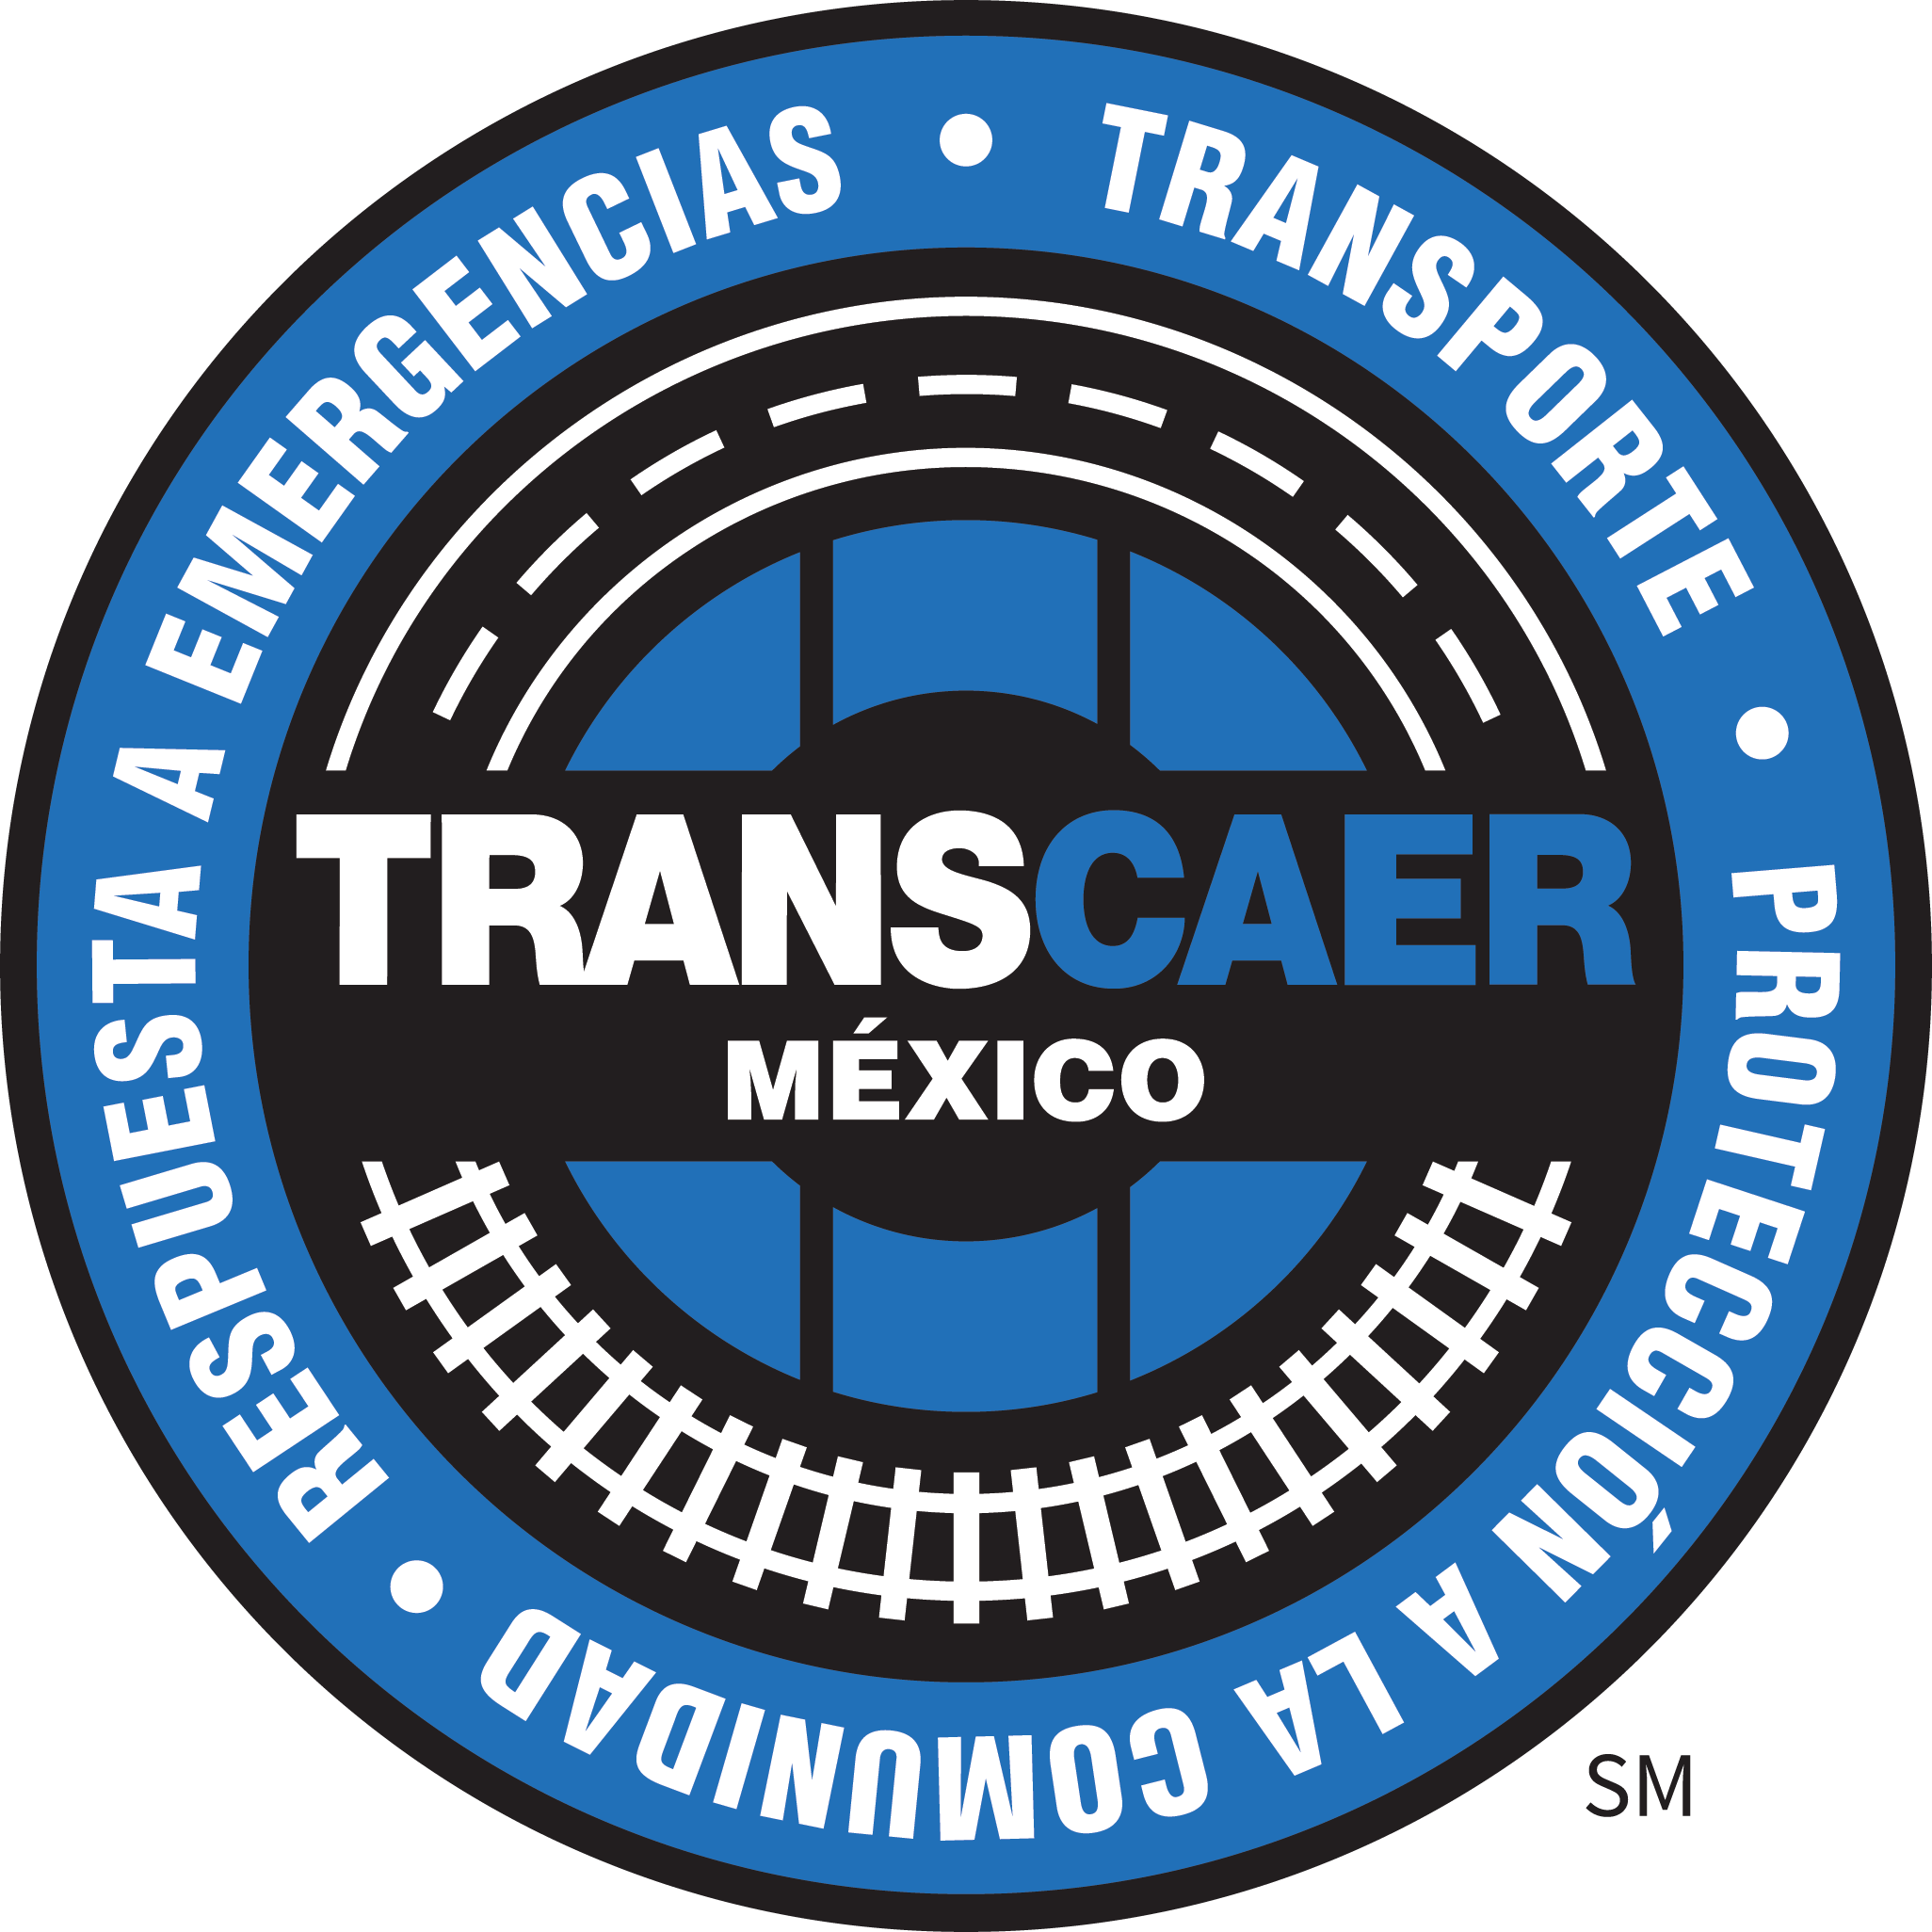 TRANSCAER Mexico circle logo